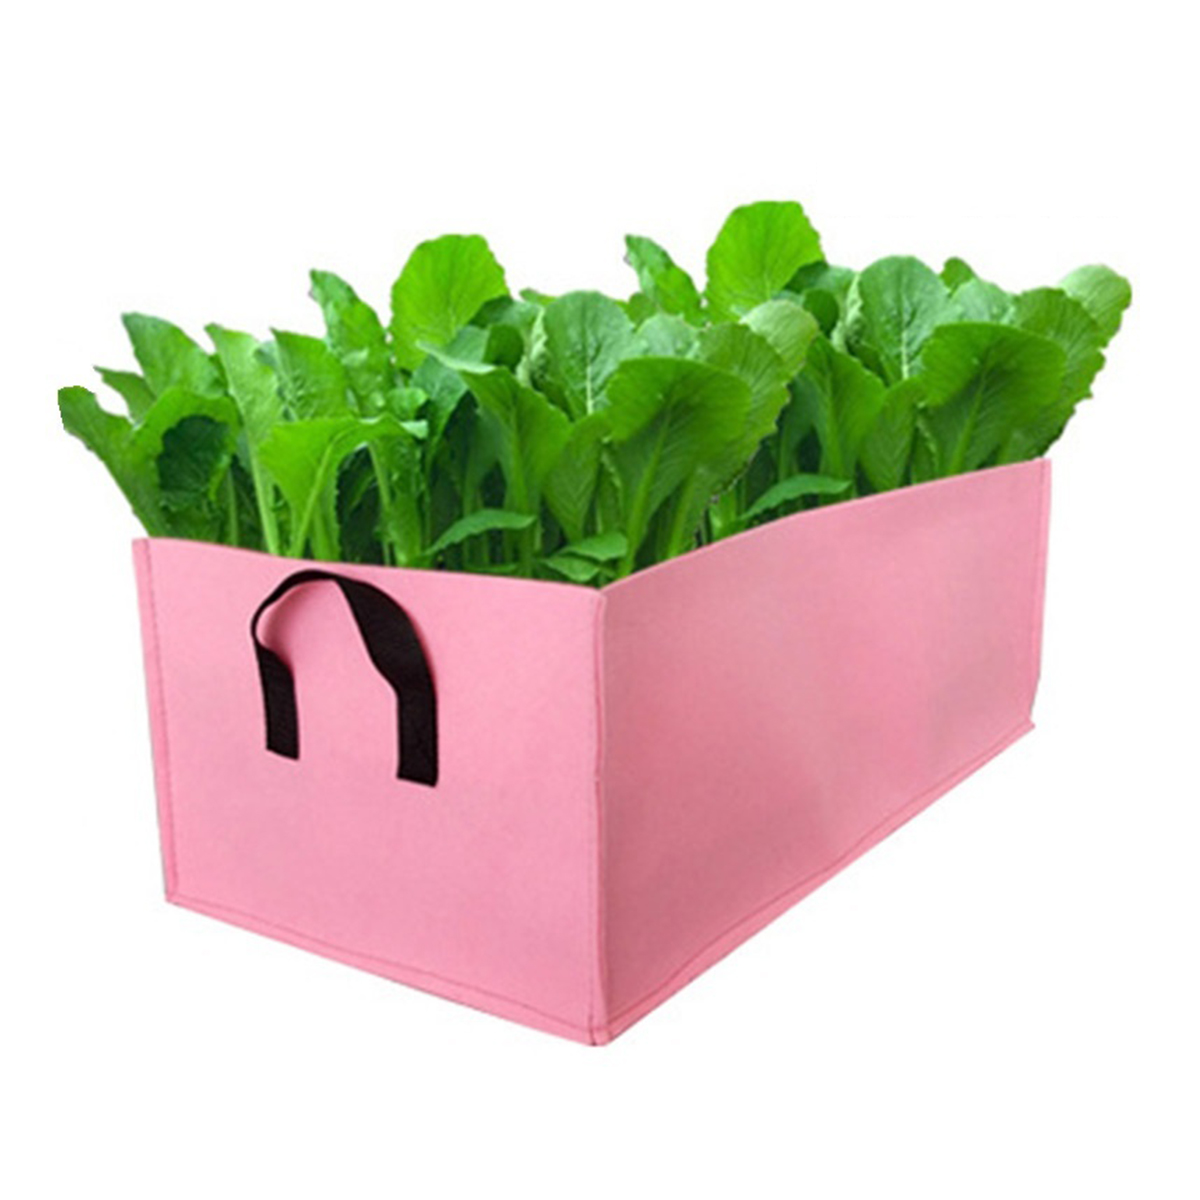 Garden-Planting-Grow-Bag-150x60x20cm-Fabric-Potato-Tomato-Planter-Outdoor-Box-1699882-6